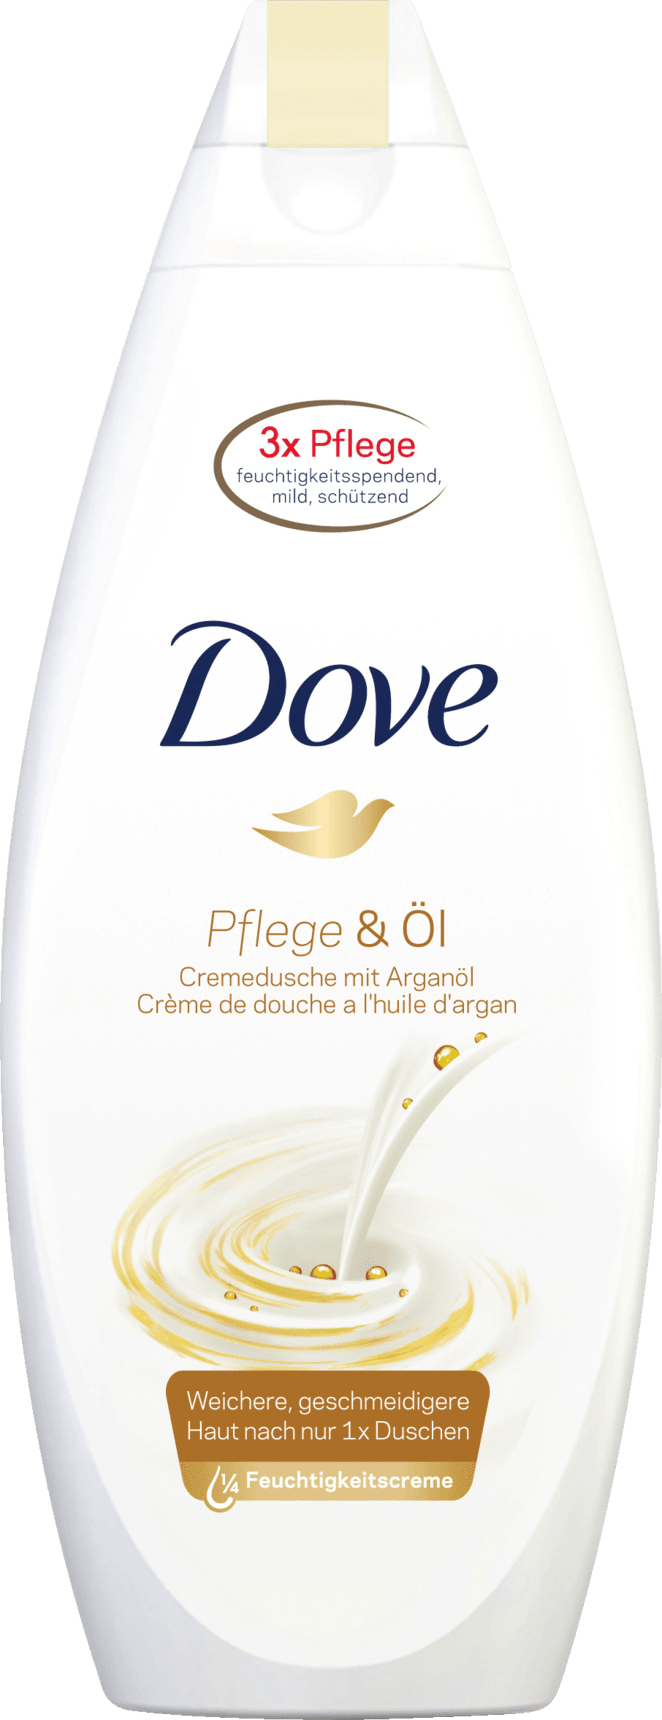 Dove Cream Shower Care & Oil, 250 Ml